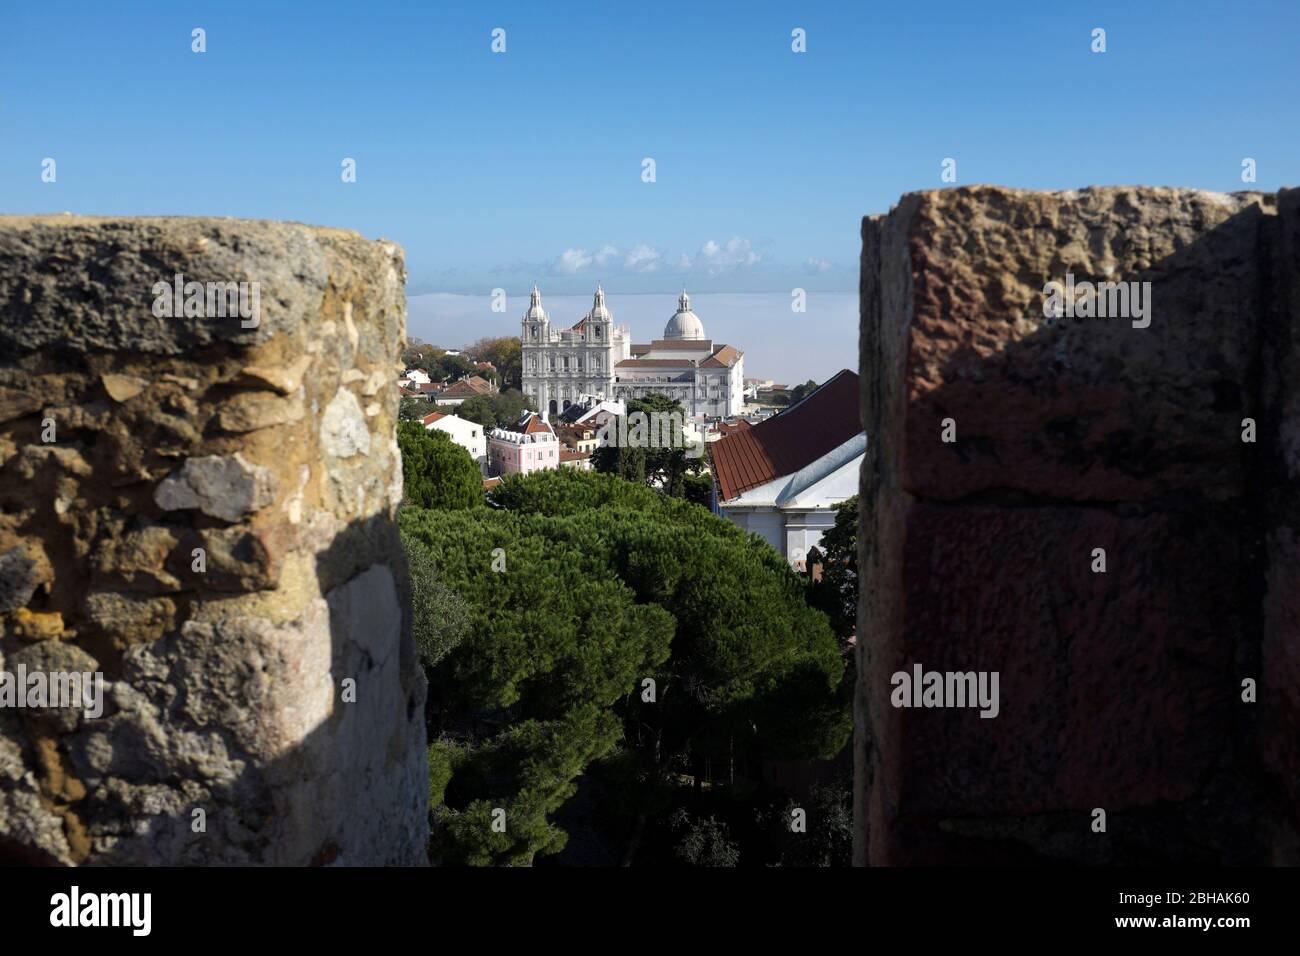 Vista dal Castelo de Sao Jorge nel centro storico di Alfama al Monastero di Sao Vicente de Fora Foto Stock